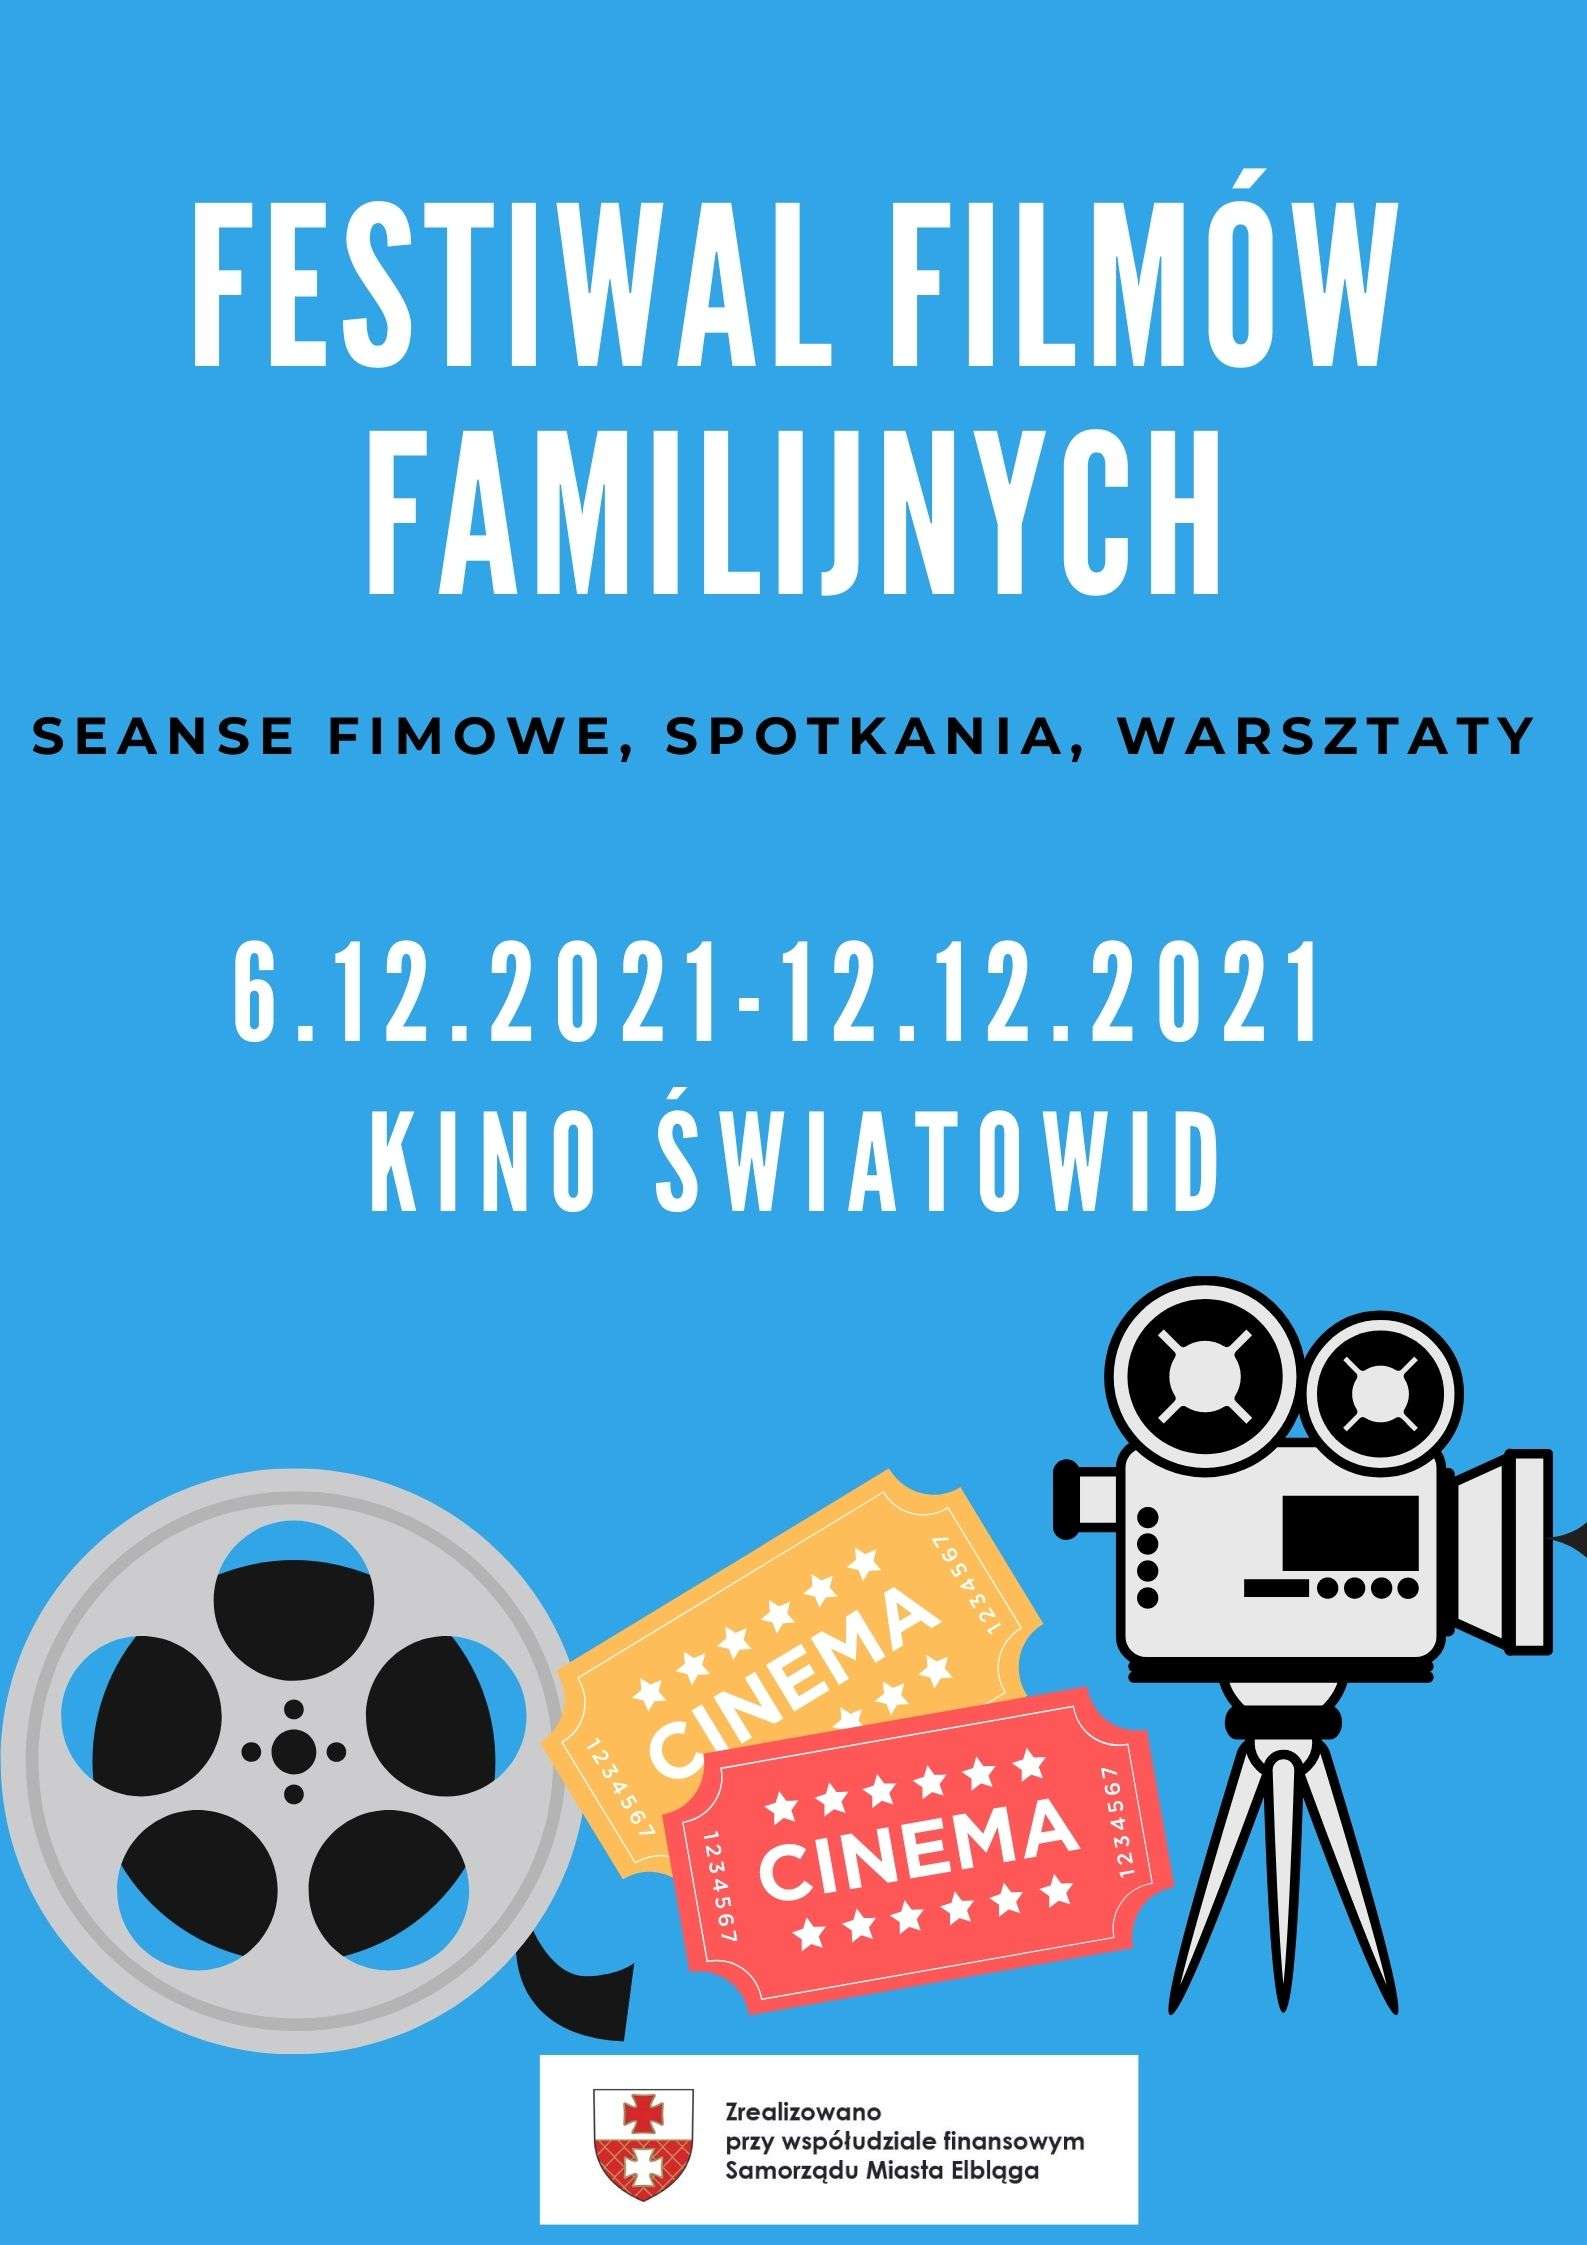 Festiwal Polskich Filmów Familijnych w Kinie Światowid!